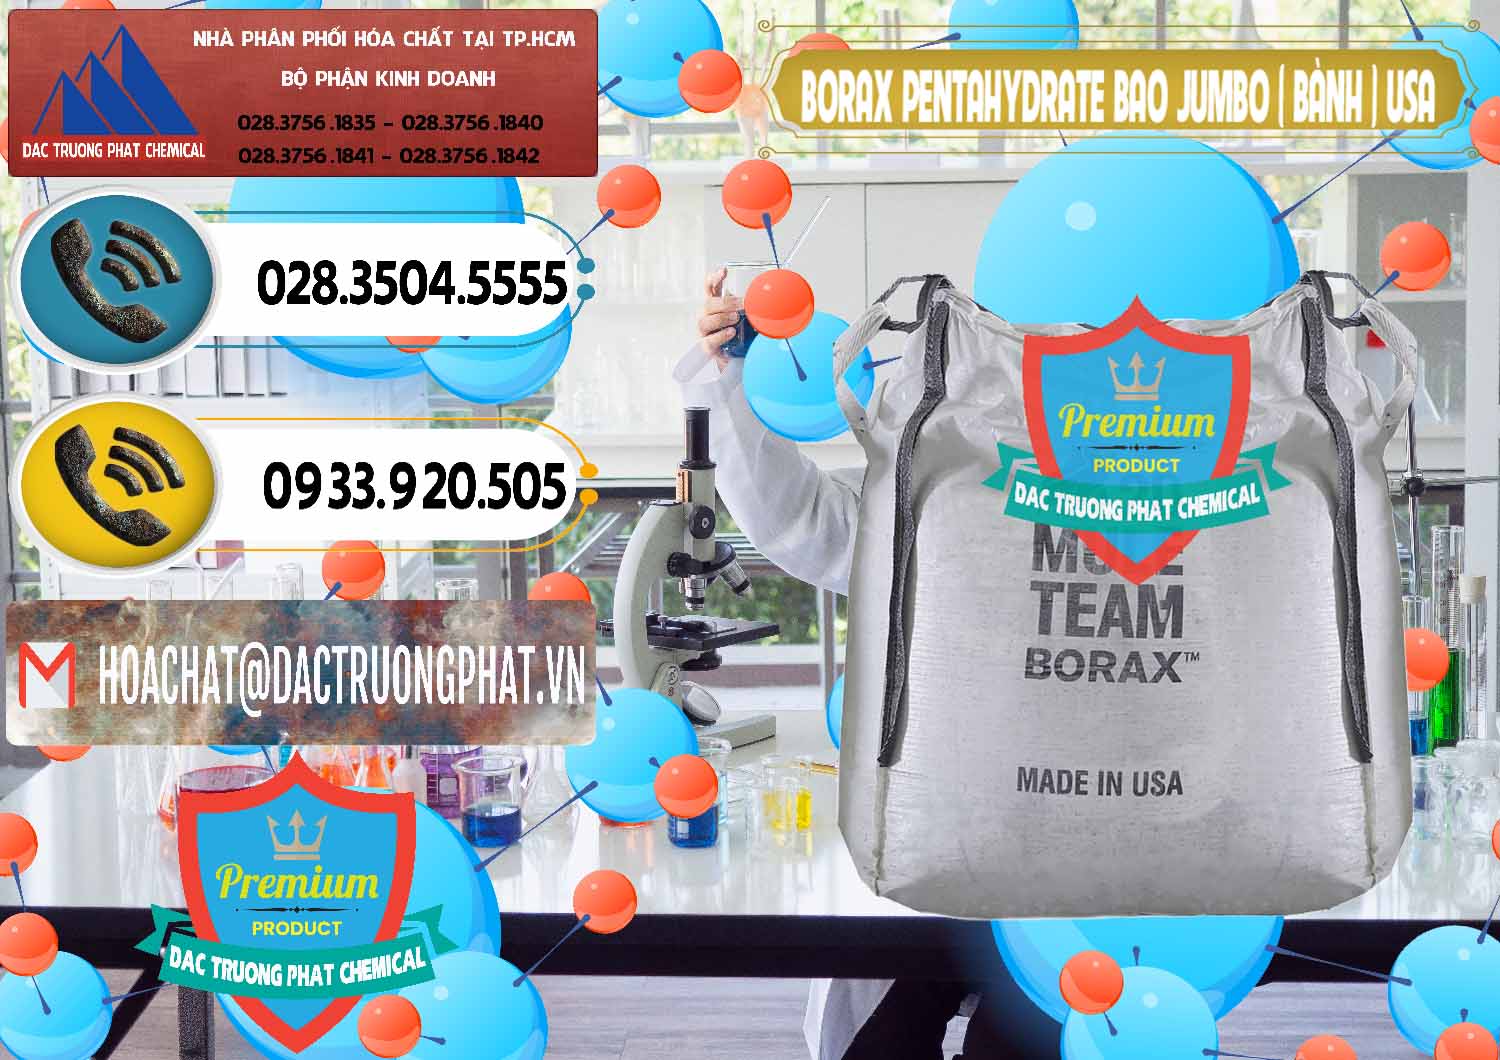 Công ty bán - phân phối Borax Pentahydrate Bao Jumbo ( Bành ) Mule 20 Team Mỹ Usa - 0278 - Công ty chuyên cung cấp ( nhập khẩu ) hóa chất tại TP.HCM - hoachatdetnhuom.vn